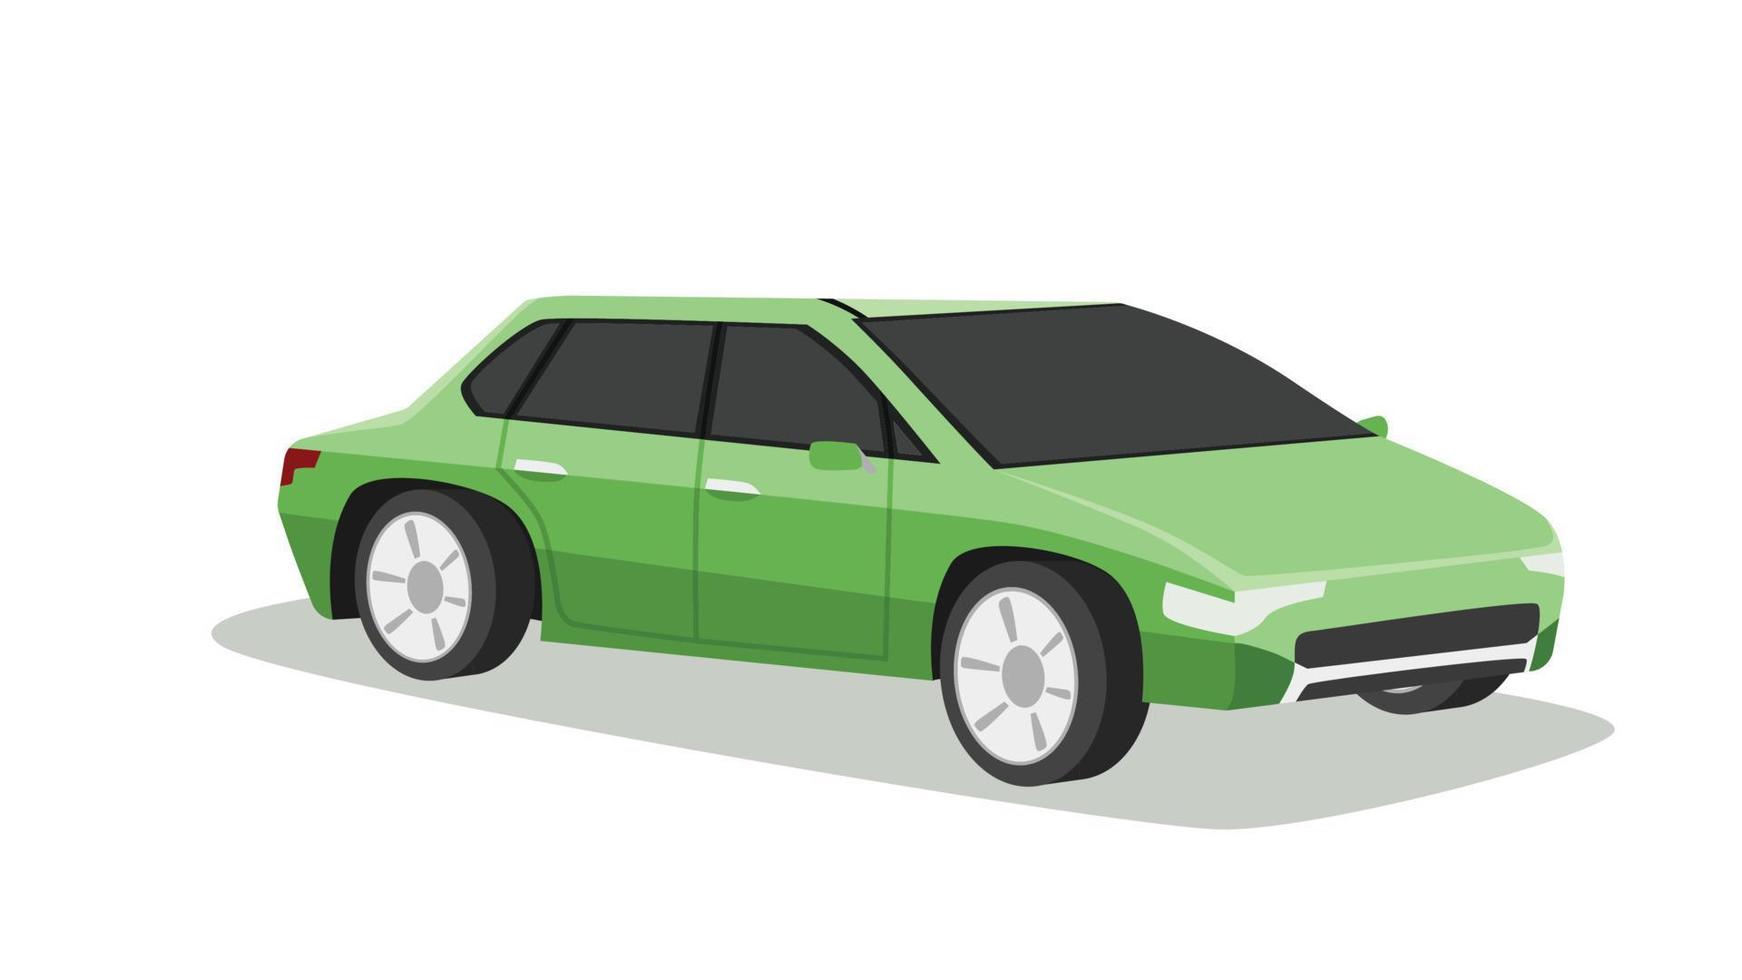 Vektor oder Illustrator des Jahrgangs der grünen Farbe des Luxusautos. isometrische ansicht des autos. auf weißem hintergrund isoliert mit schatten des autos.